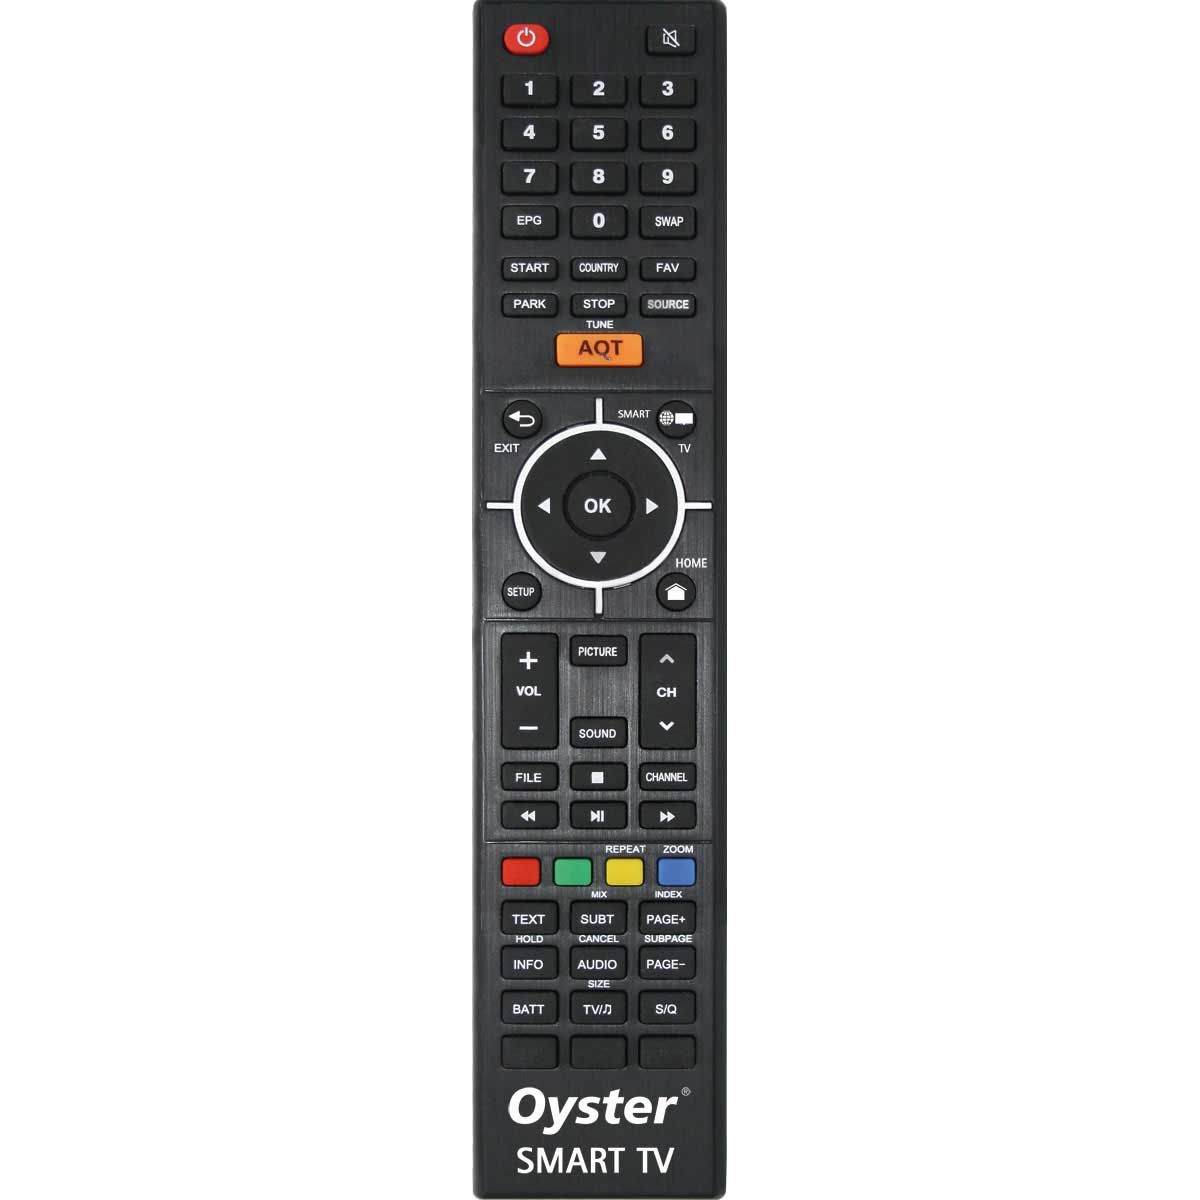 TEN HAAFT Oyster 70 Premium Sat-Anlage mit Smart TV 32 Zoll - 87535 - 87520